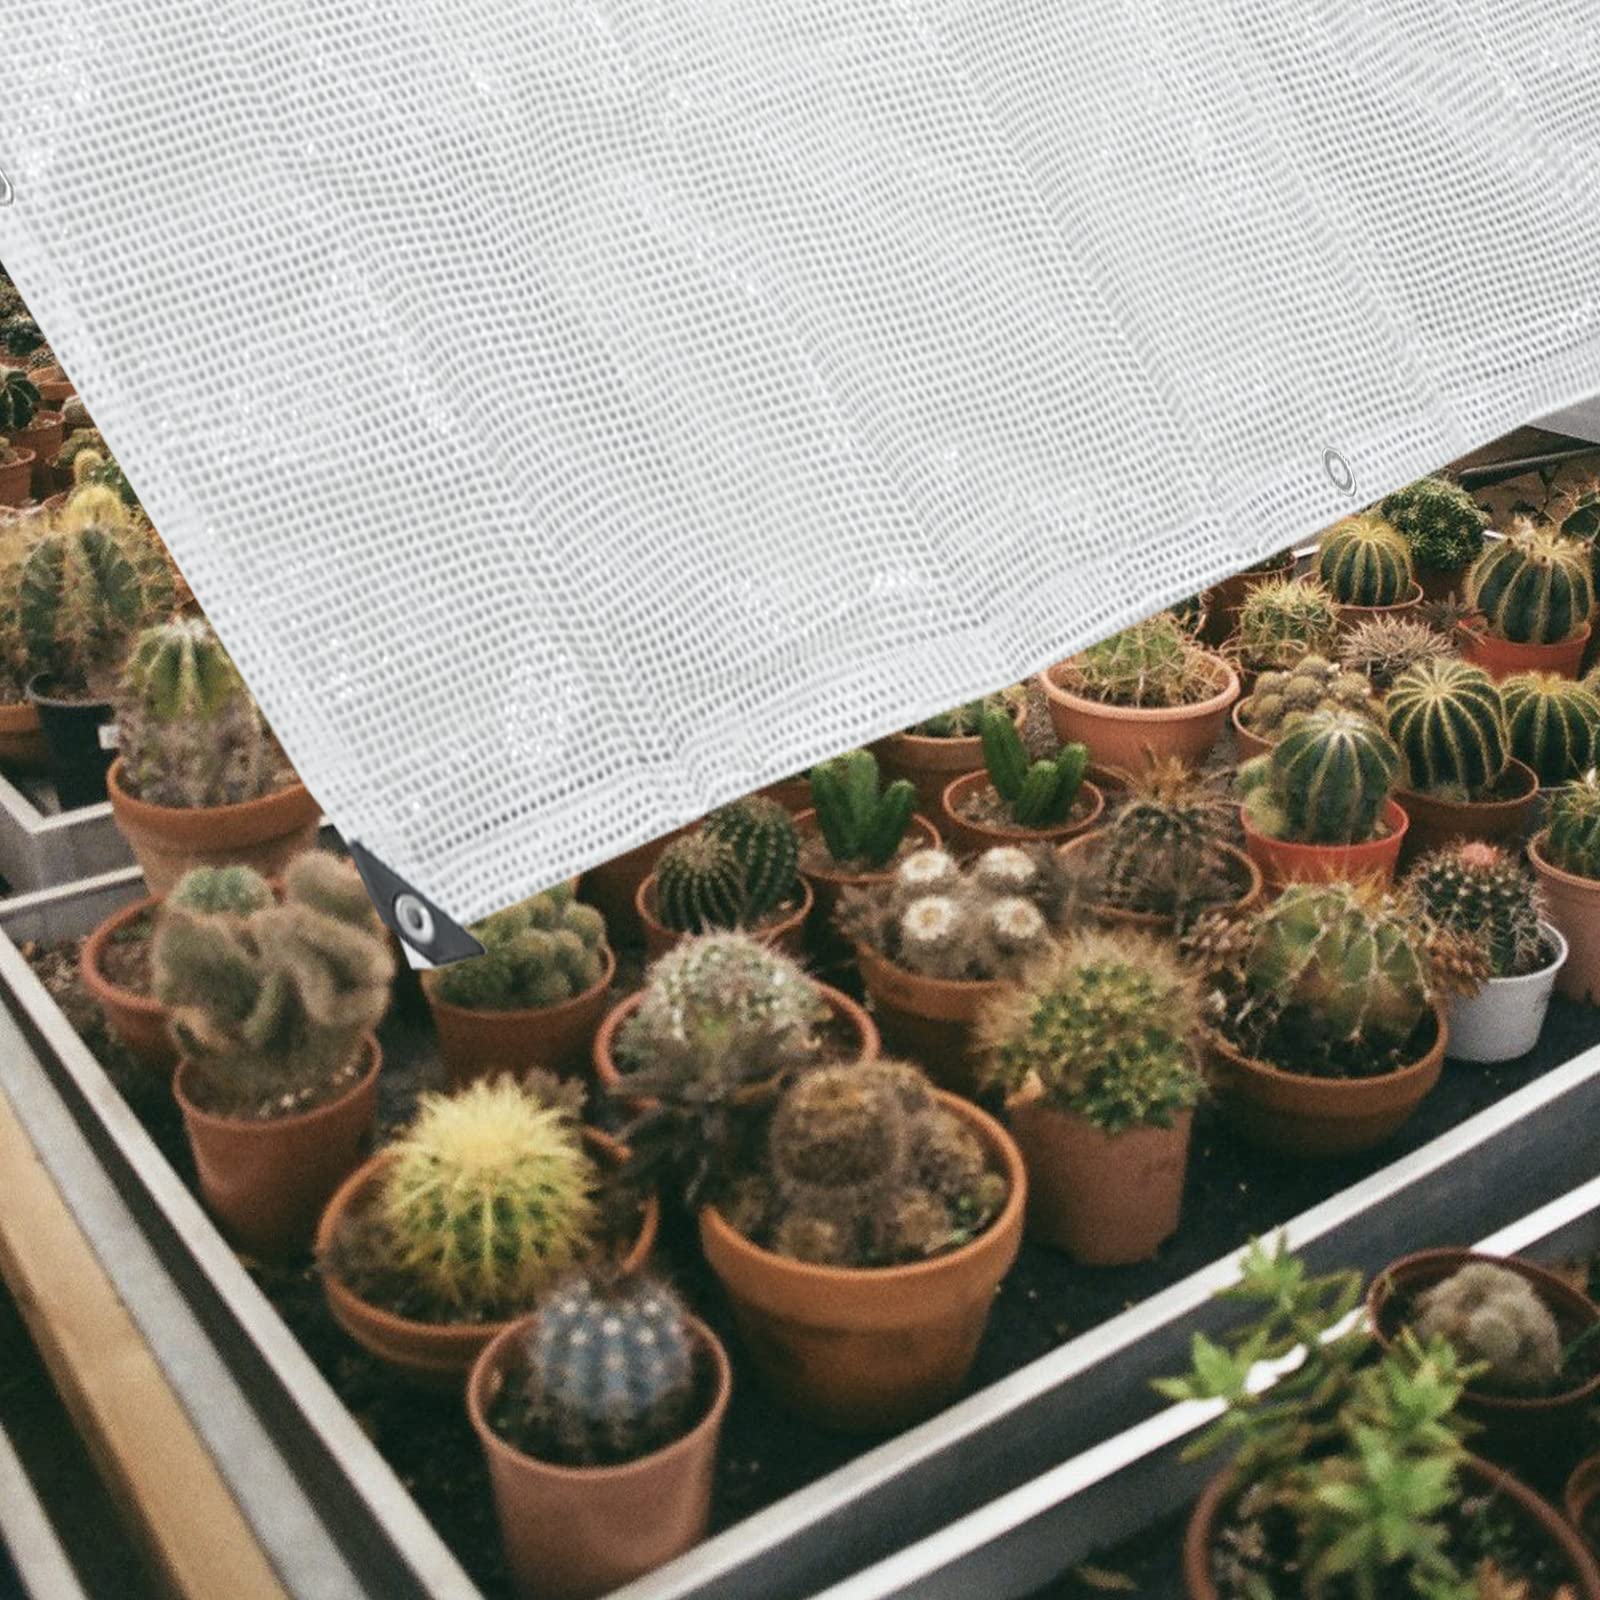 Bâche de serre imperméable et résistante en polyéthylène transparent pour les cours, les jardins, les toits (6,1 x 4,87 m)